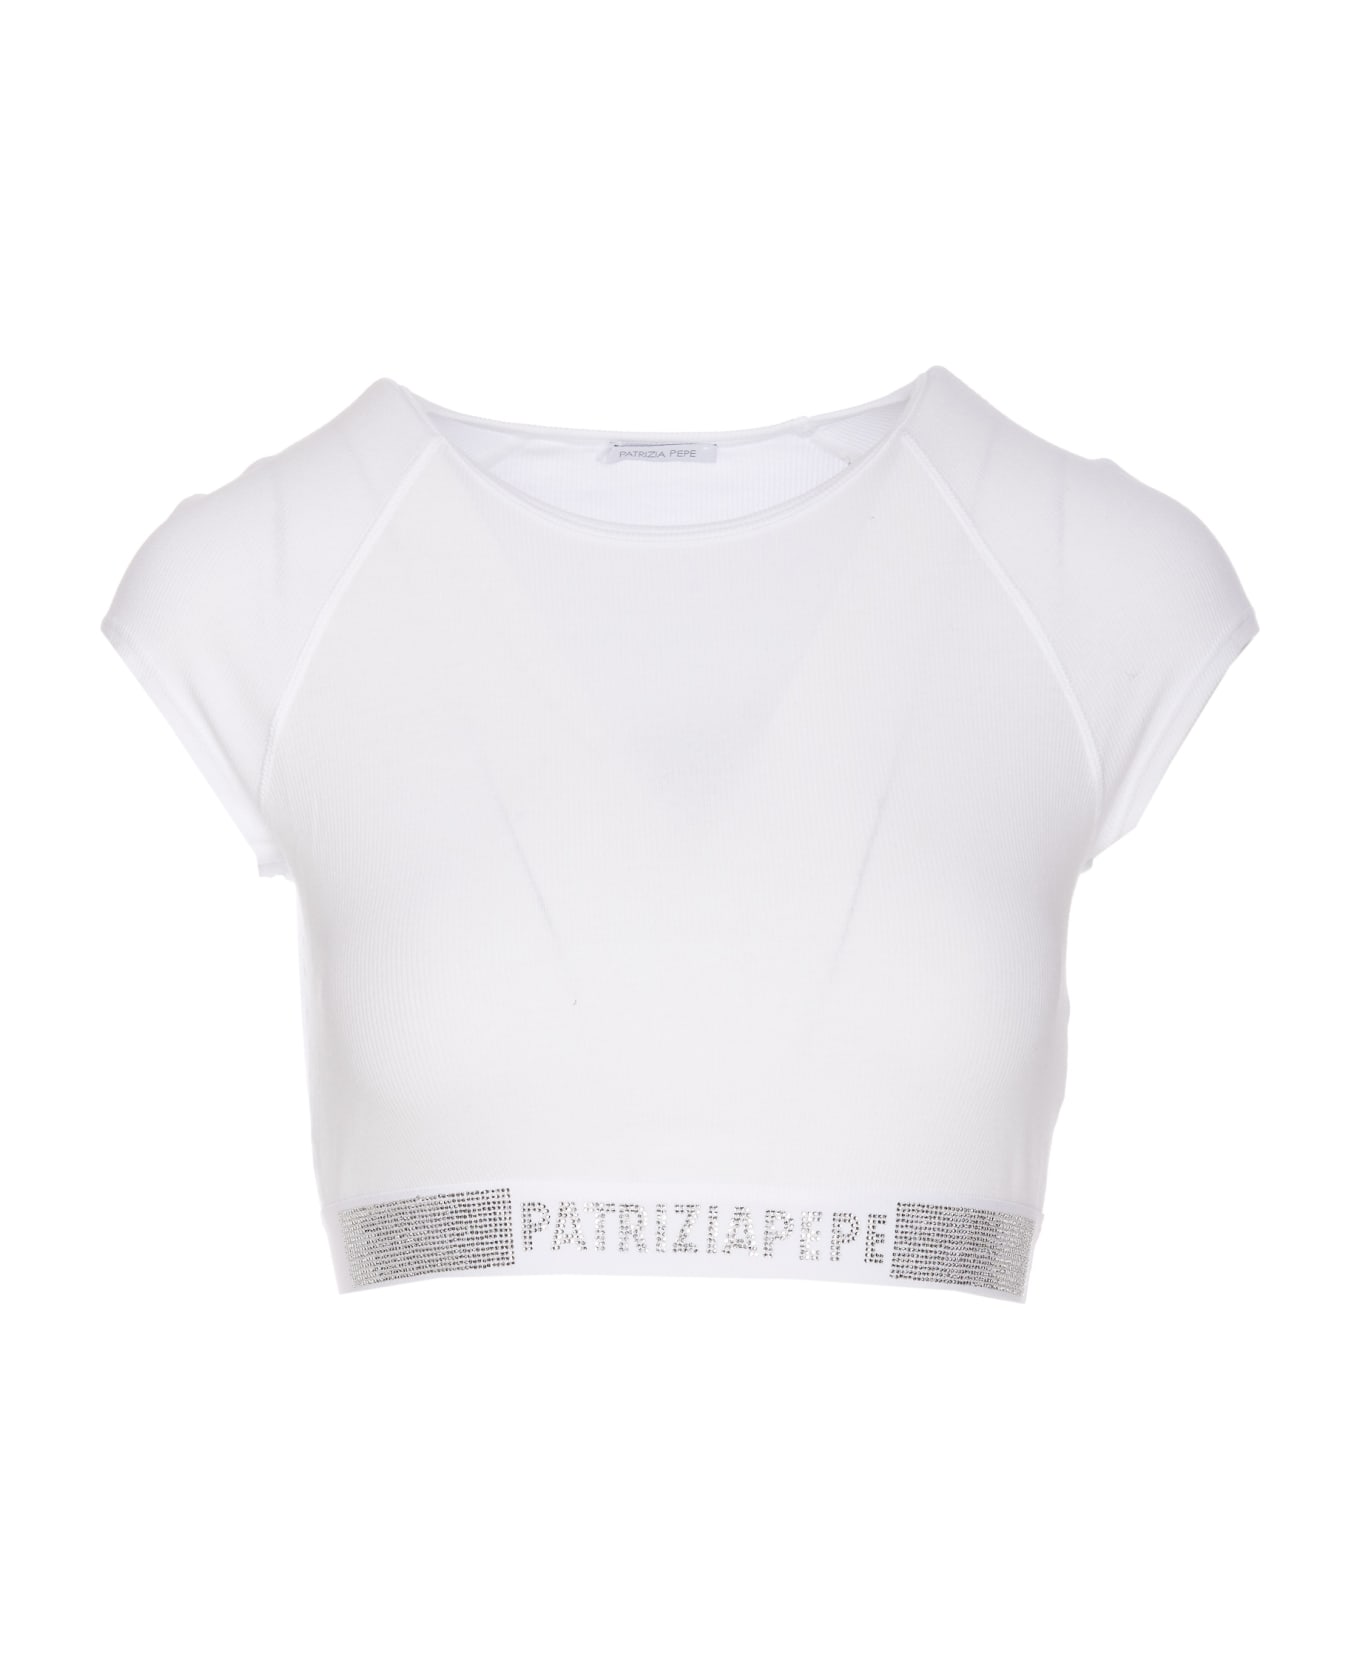 Patrizia Pepe Logo Top - White